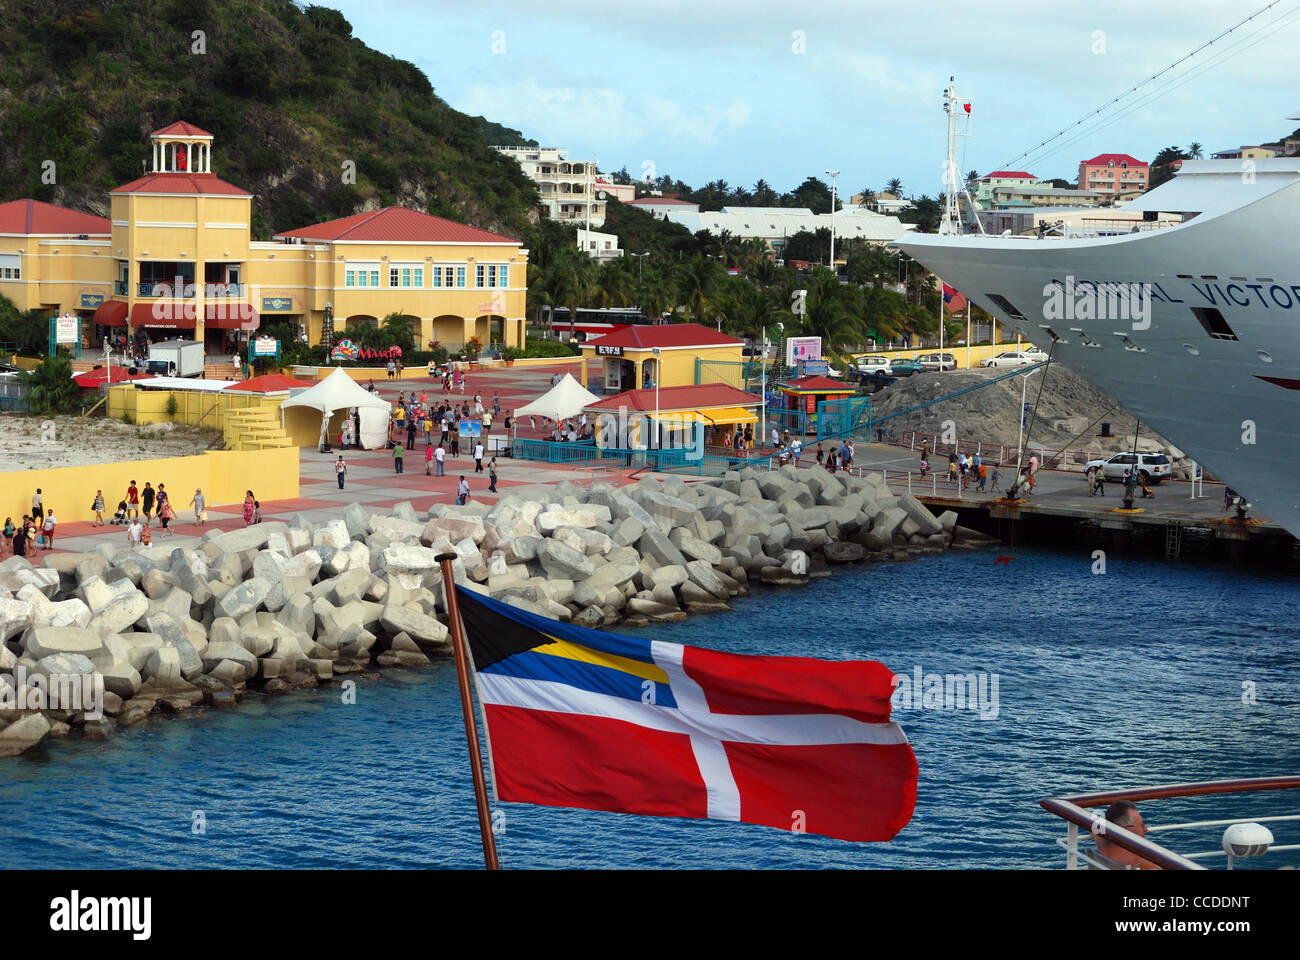 Vue sur le port avec un drapeau à l'avant-plan, Philipsburg, Saint-Martin, Antilles françaises, Caraïbes, Antilles. Banque D'Images